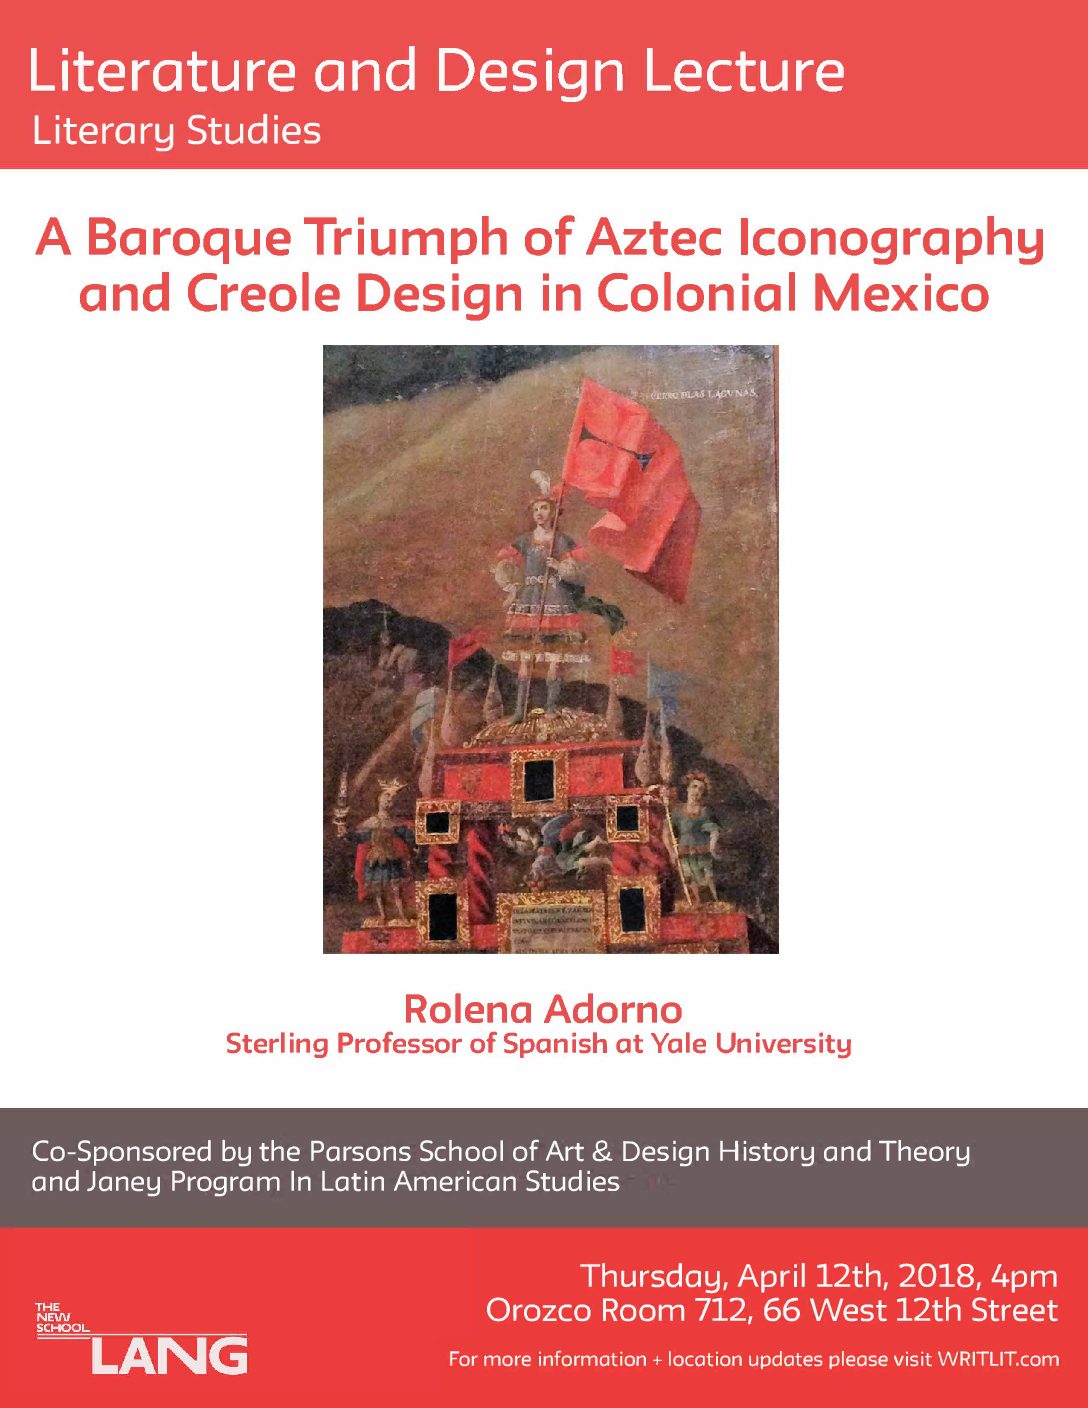 Literature and Design Lecture featuring Rolena Adorno